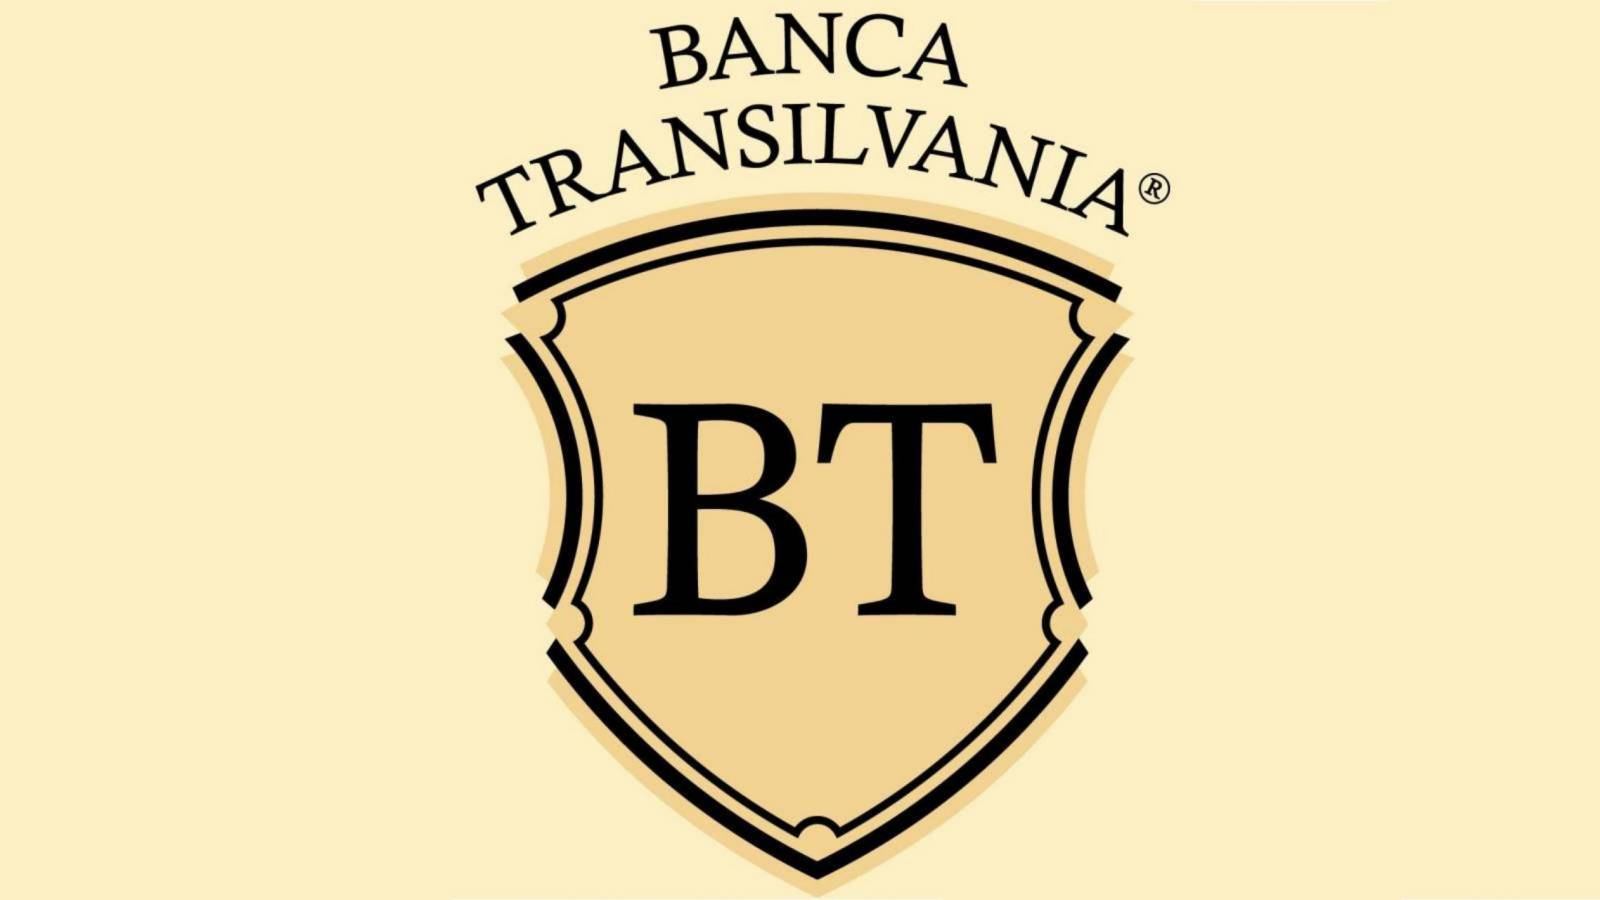 BANCA Transilvania Neue DRINGENDE WARNUNG an rumänische Kunden herausgegeben